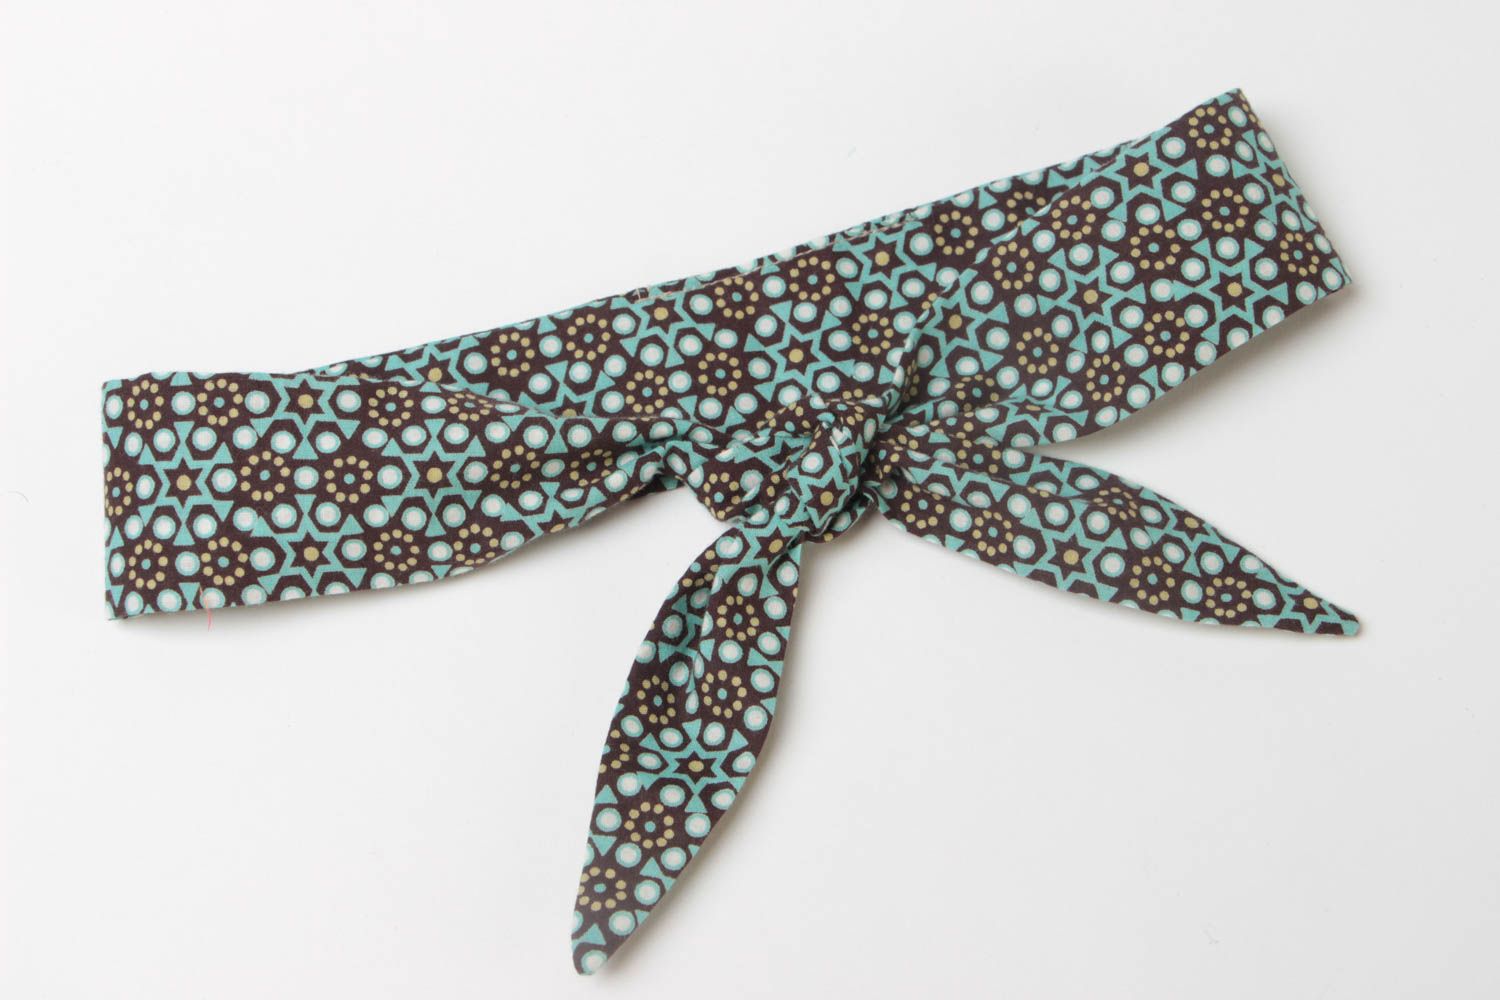 Гибкая повязка на голову из ткани с бантиком цветная красивая модная хэнд мейд фото 3